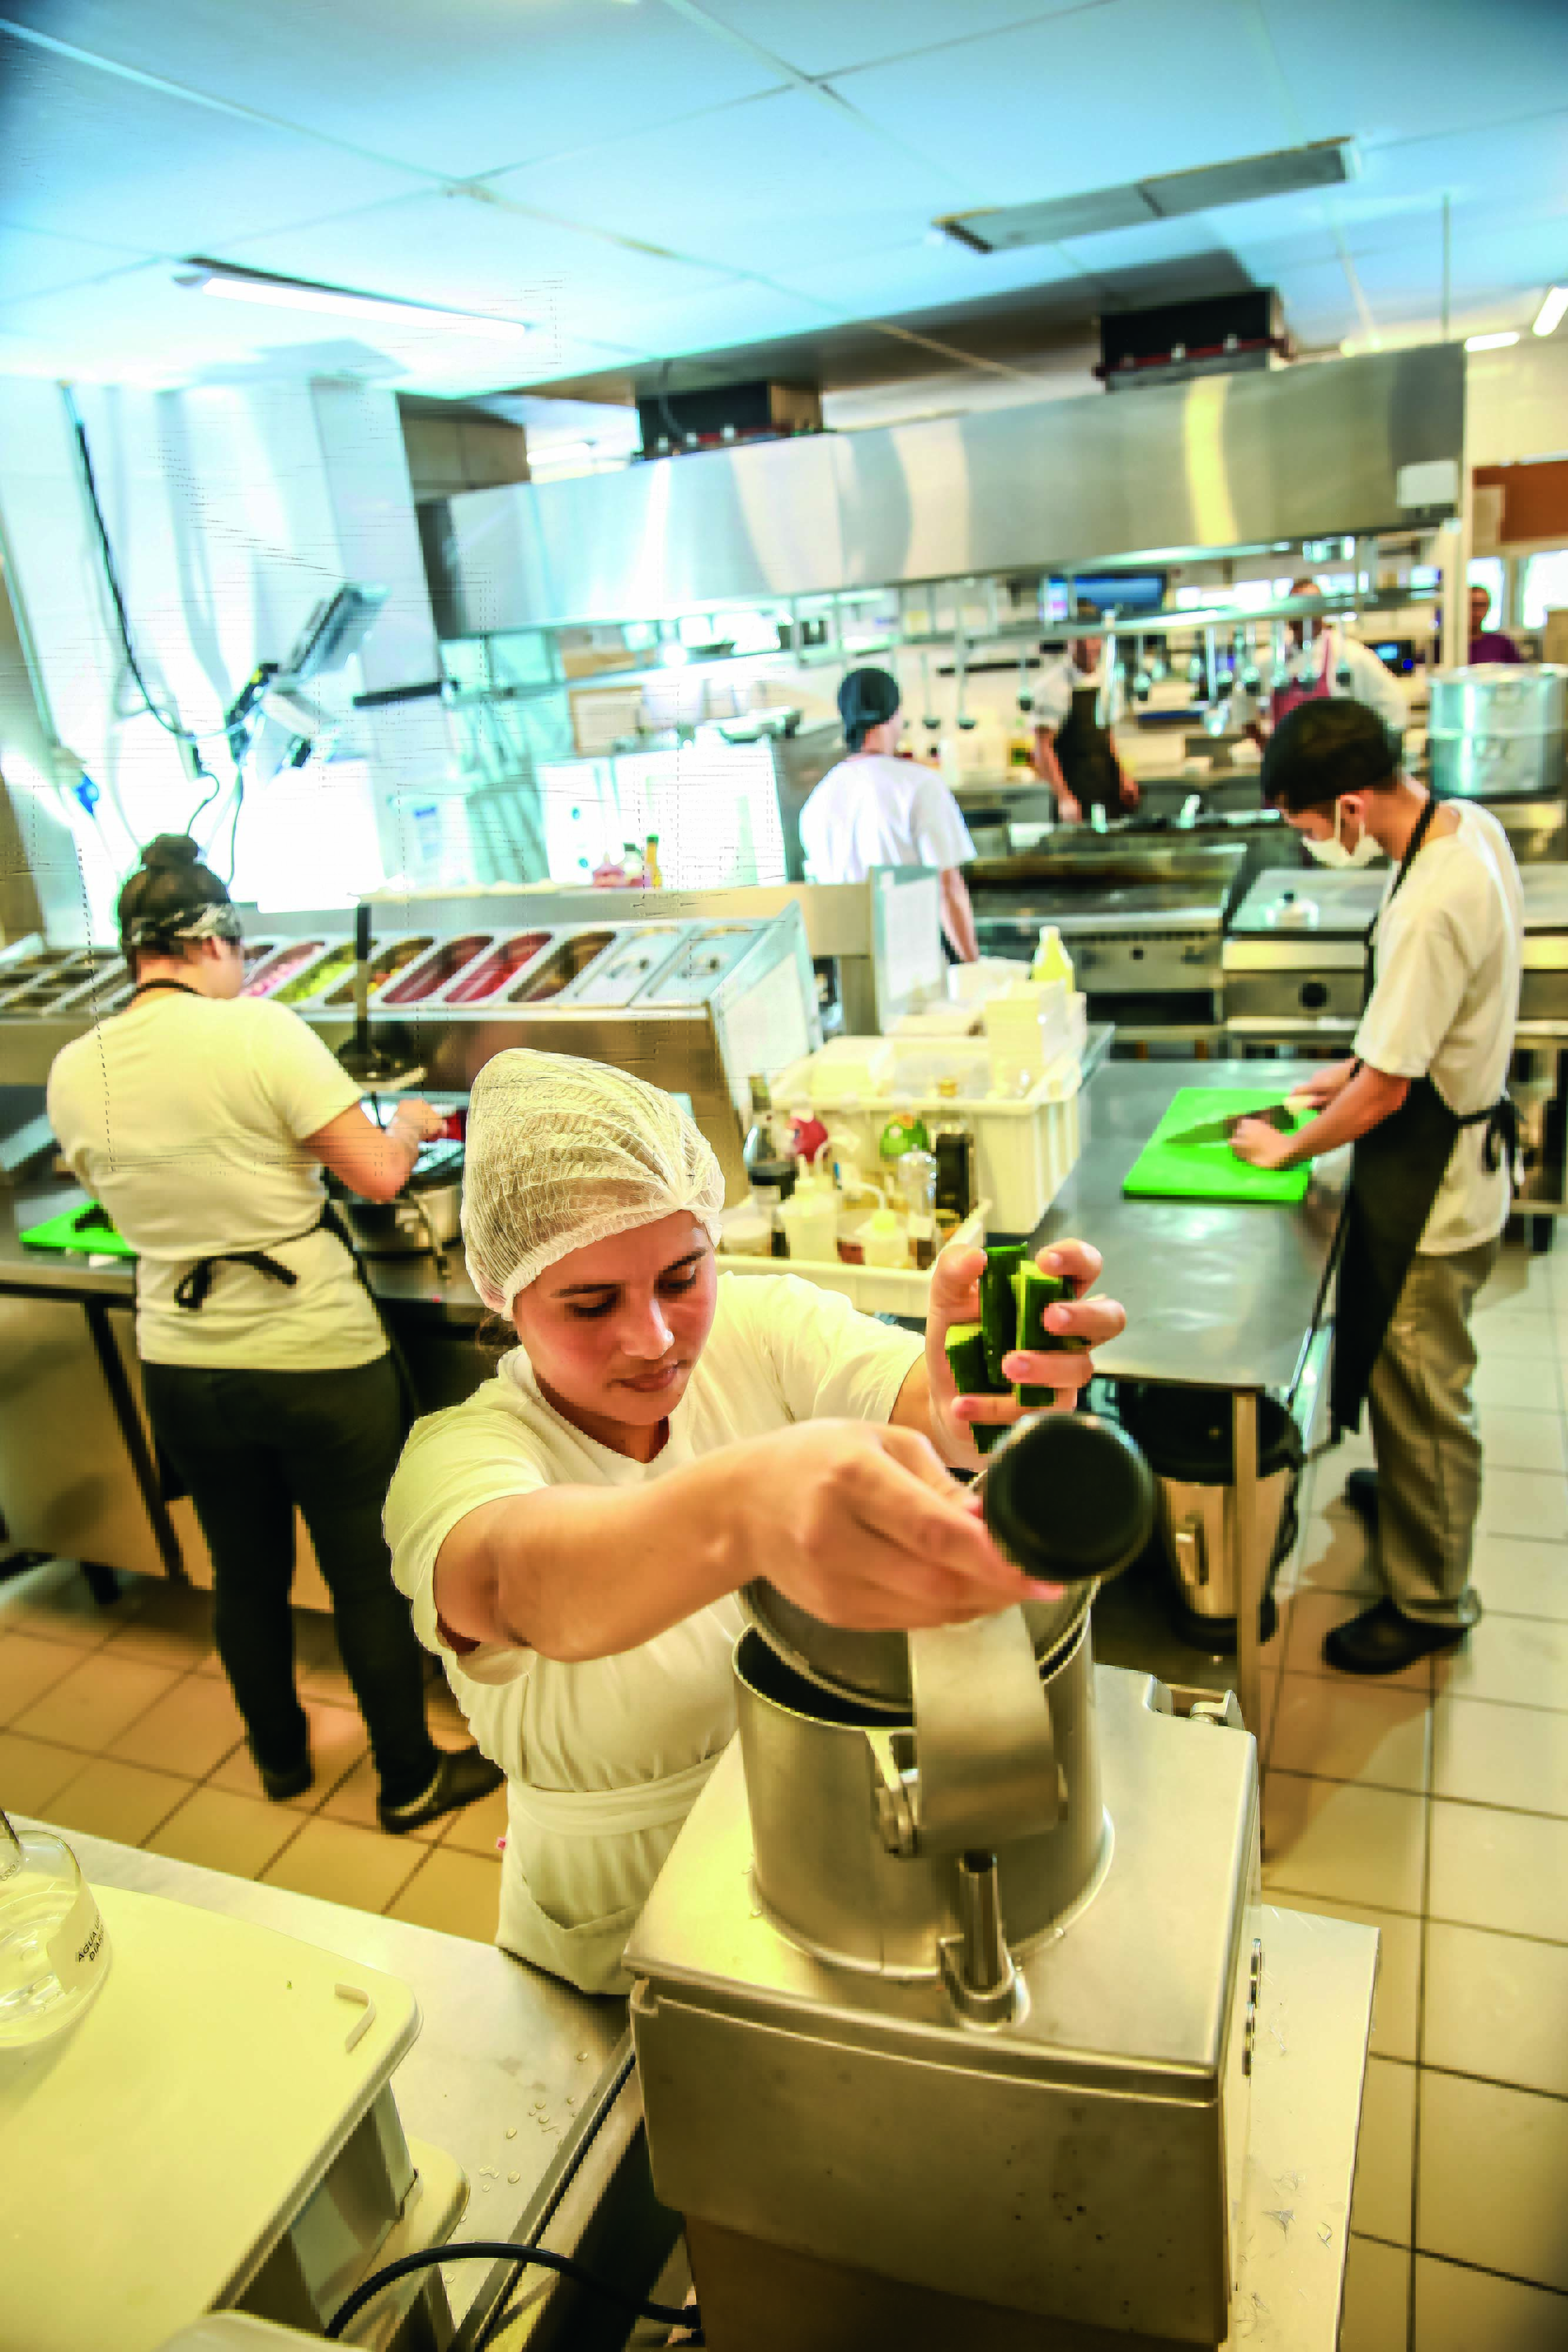 Imagem mostra cozinha com cozinheiros de roupas brancas e aventais. Em primeiro plano, uma mulher de touca colocando legumes em aparelho